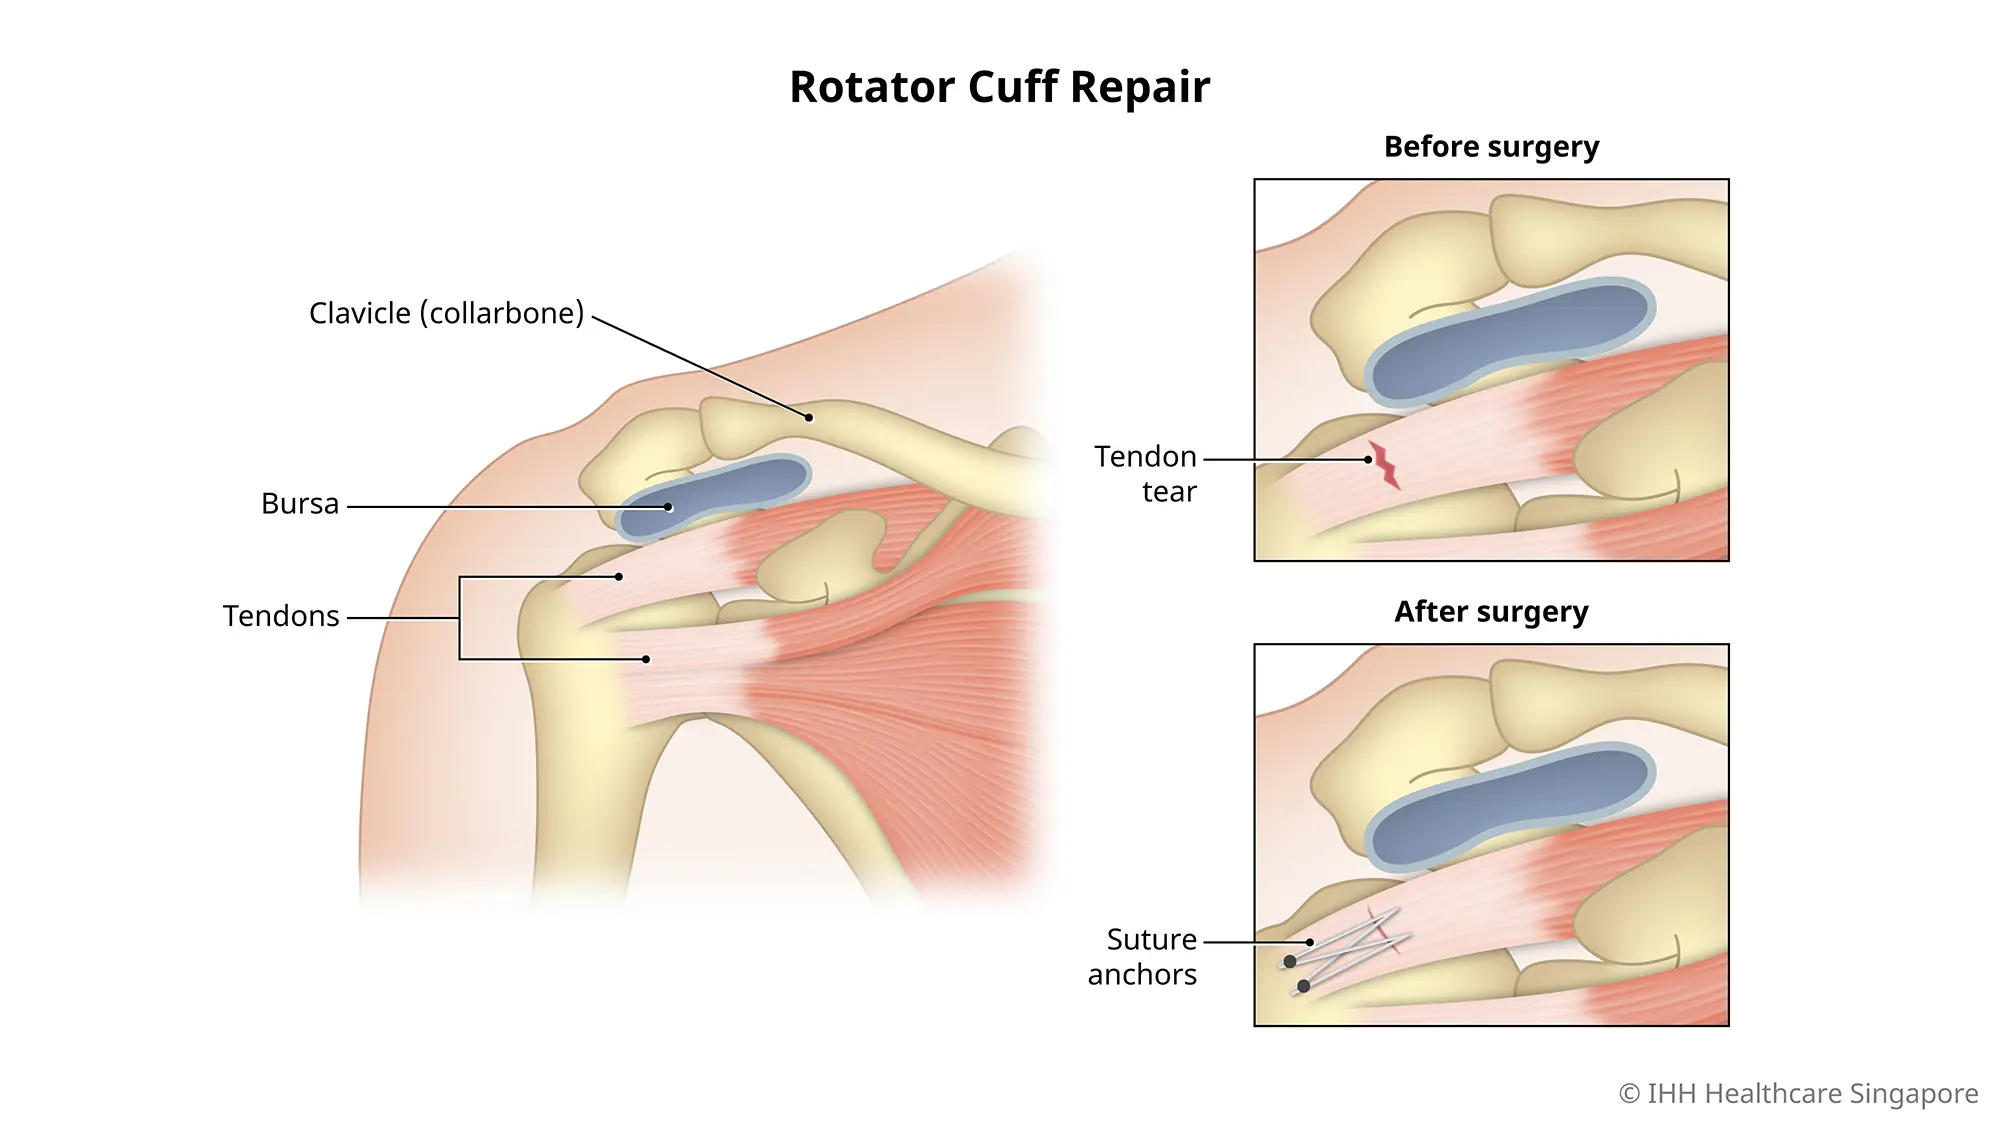 肩袖修复是对肩关节处撕裂的肌肉进行修复的手术。